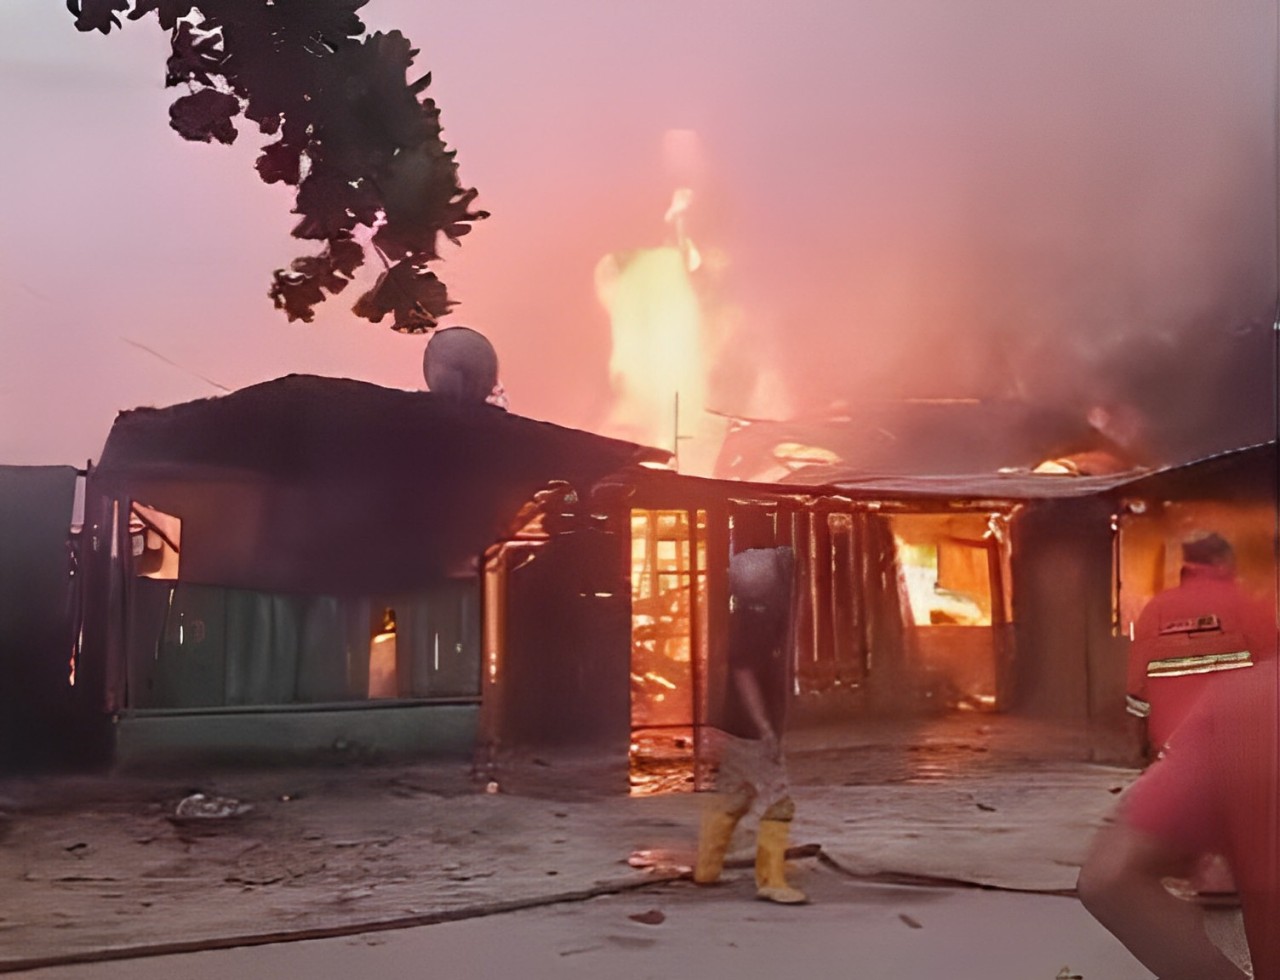 5 Rumah Warga Hangus Terbakar di Kelurahan Teluk Binjai Kota Dumai